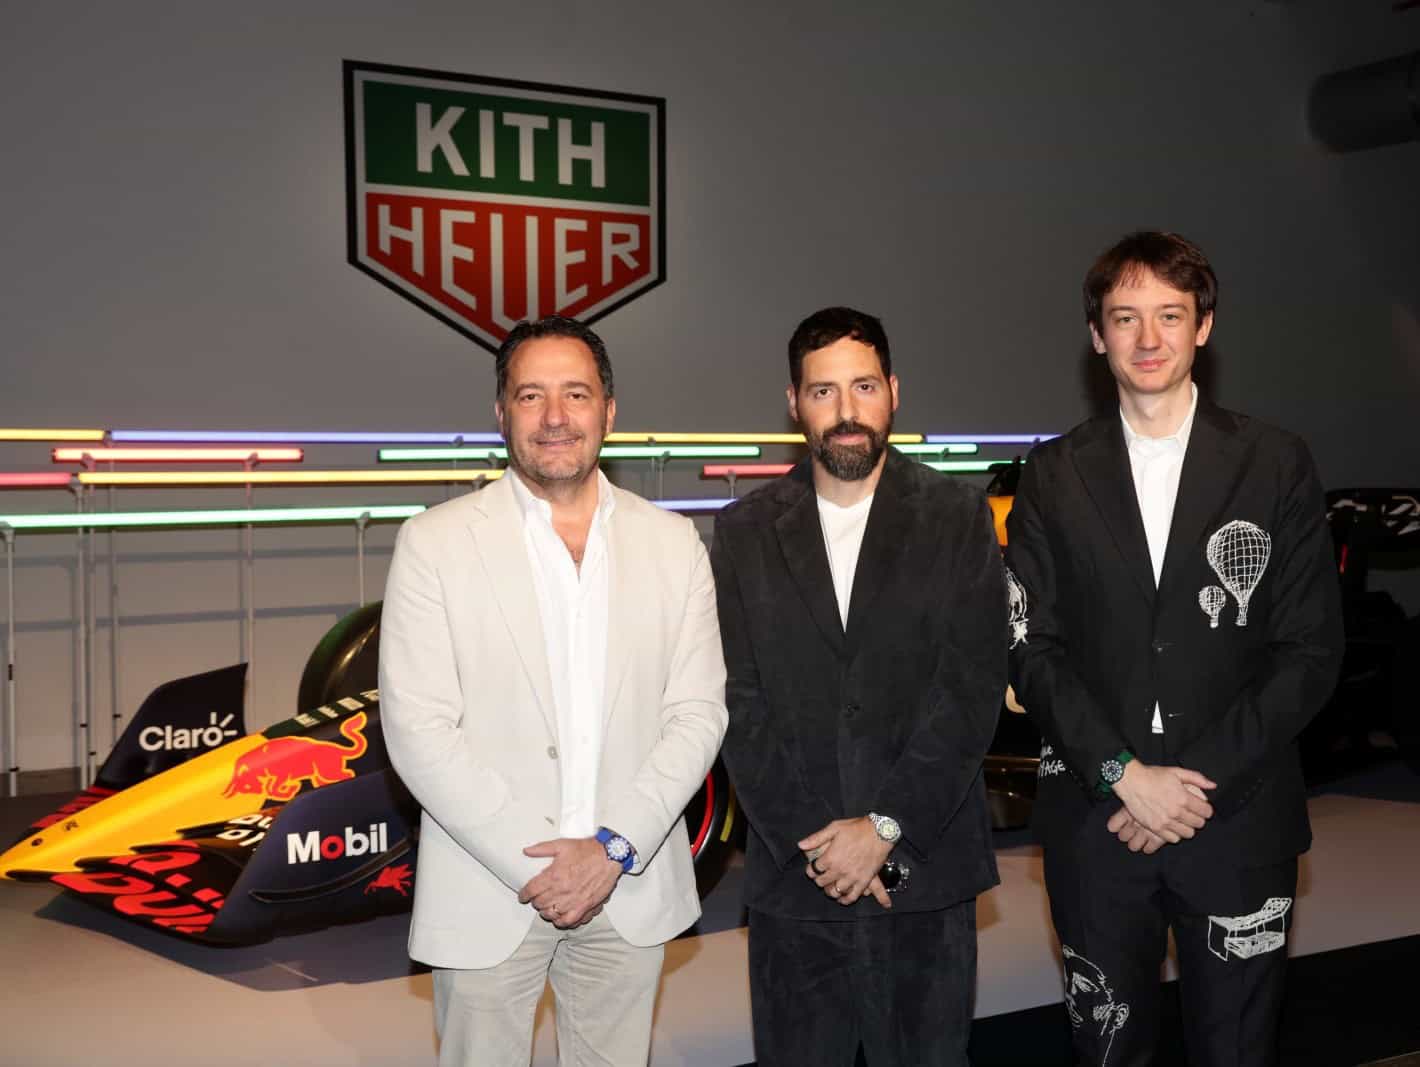 Julien Tornare Ronnie Fieg und Frédéric Arnault beim Launch der TAG Heuer Formula 1 Kith im Rubell Museum Miami